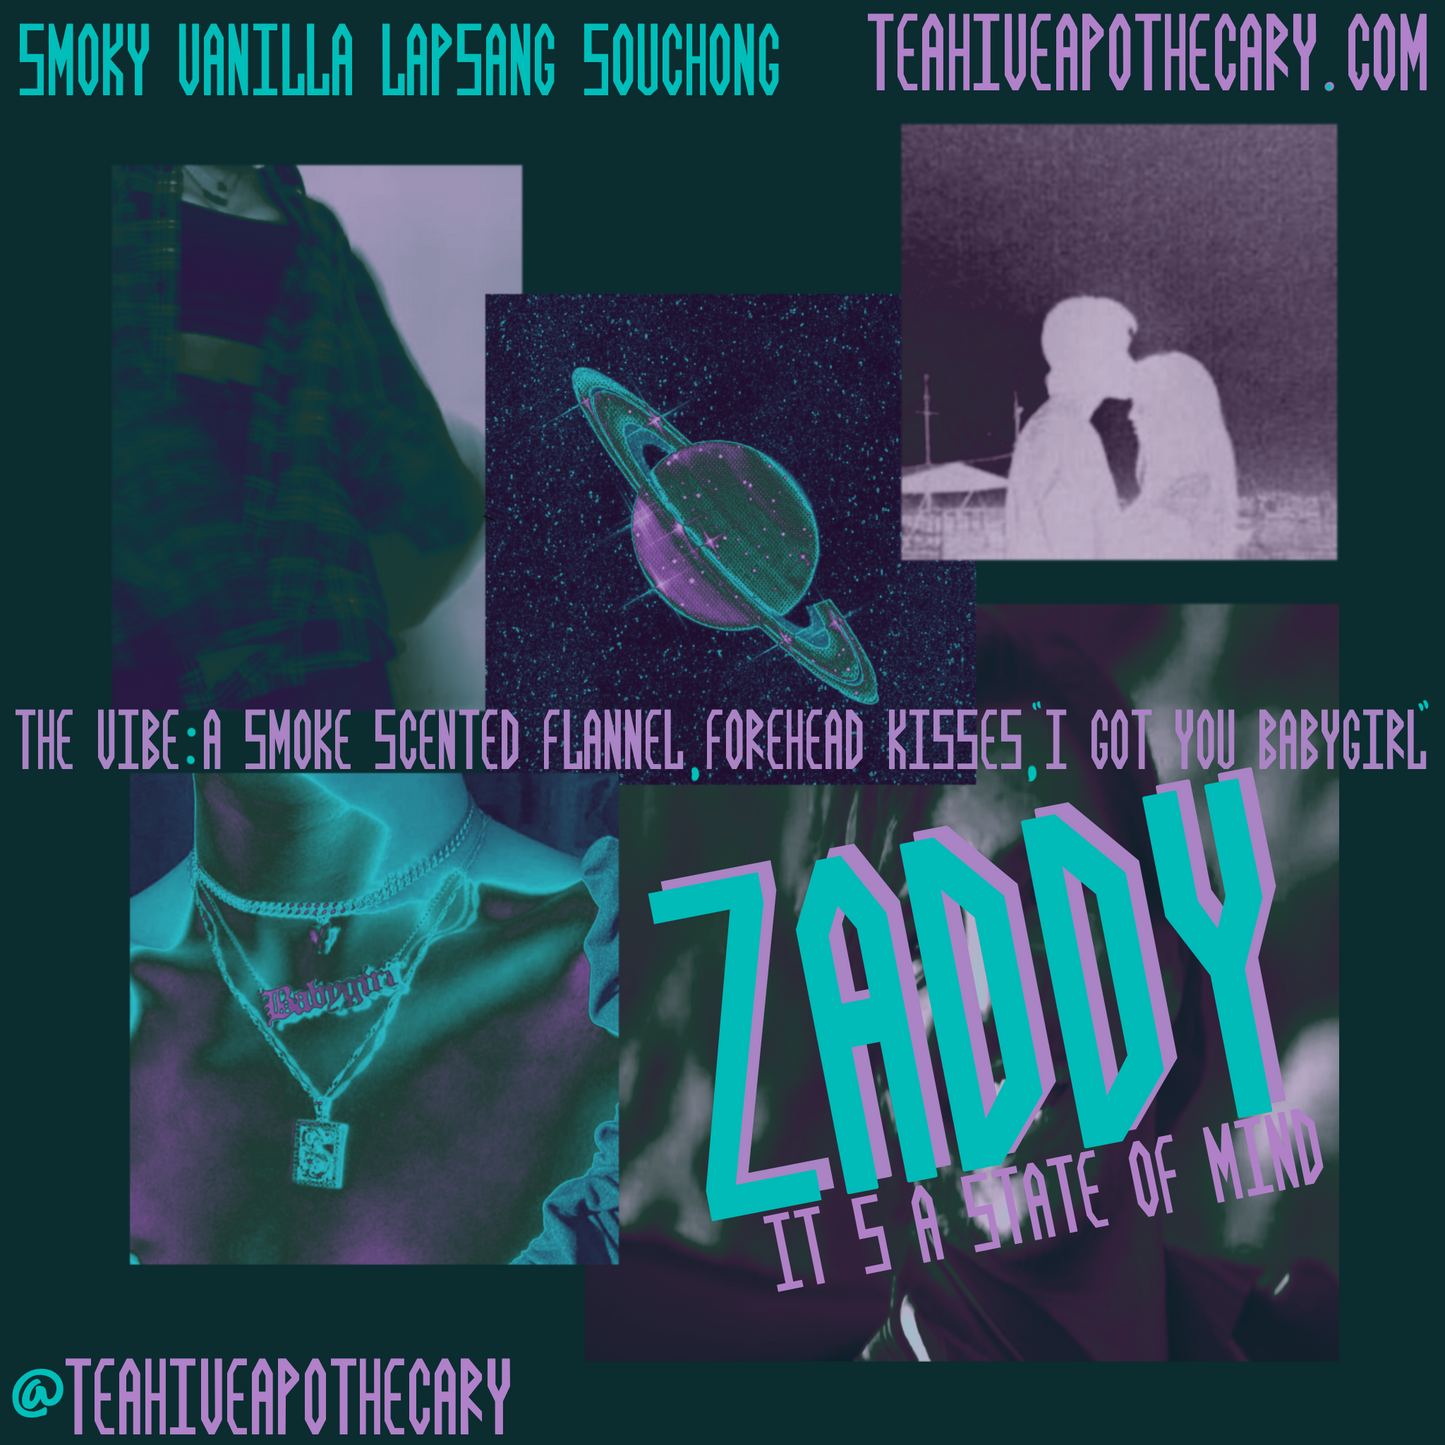 Zaddy - Smoky Vanilla Lapsang Souchong